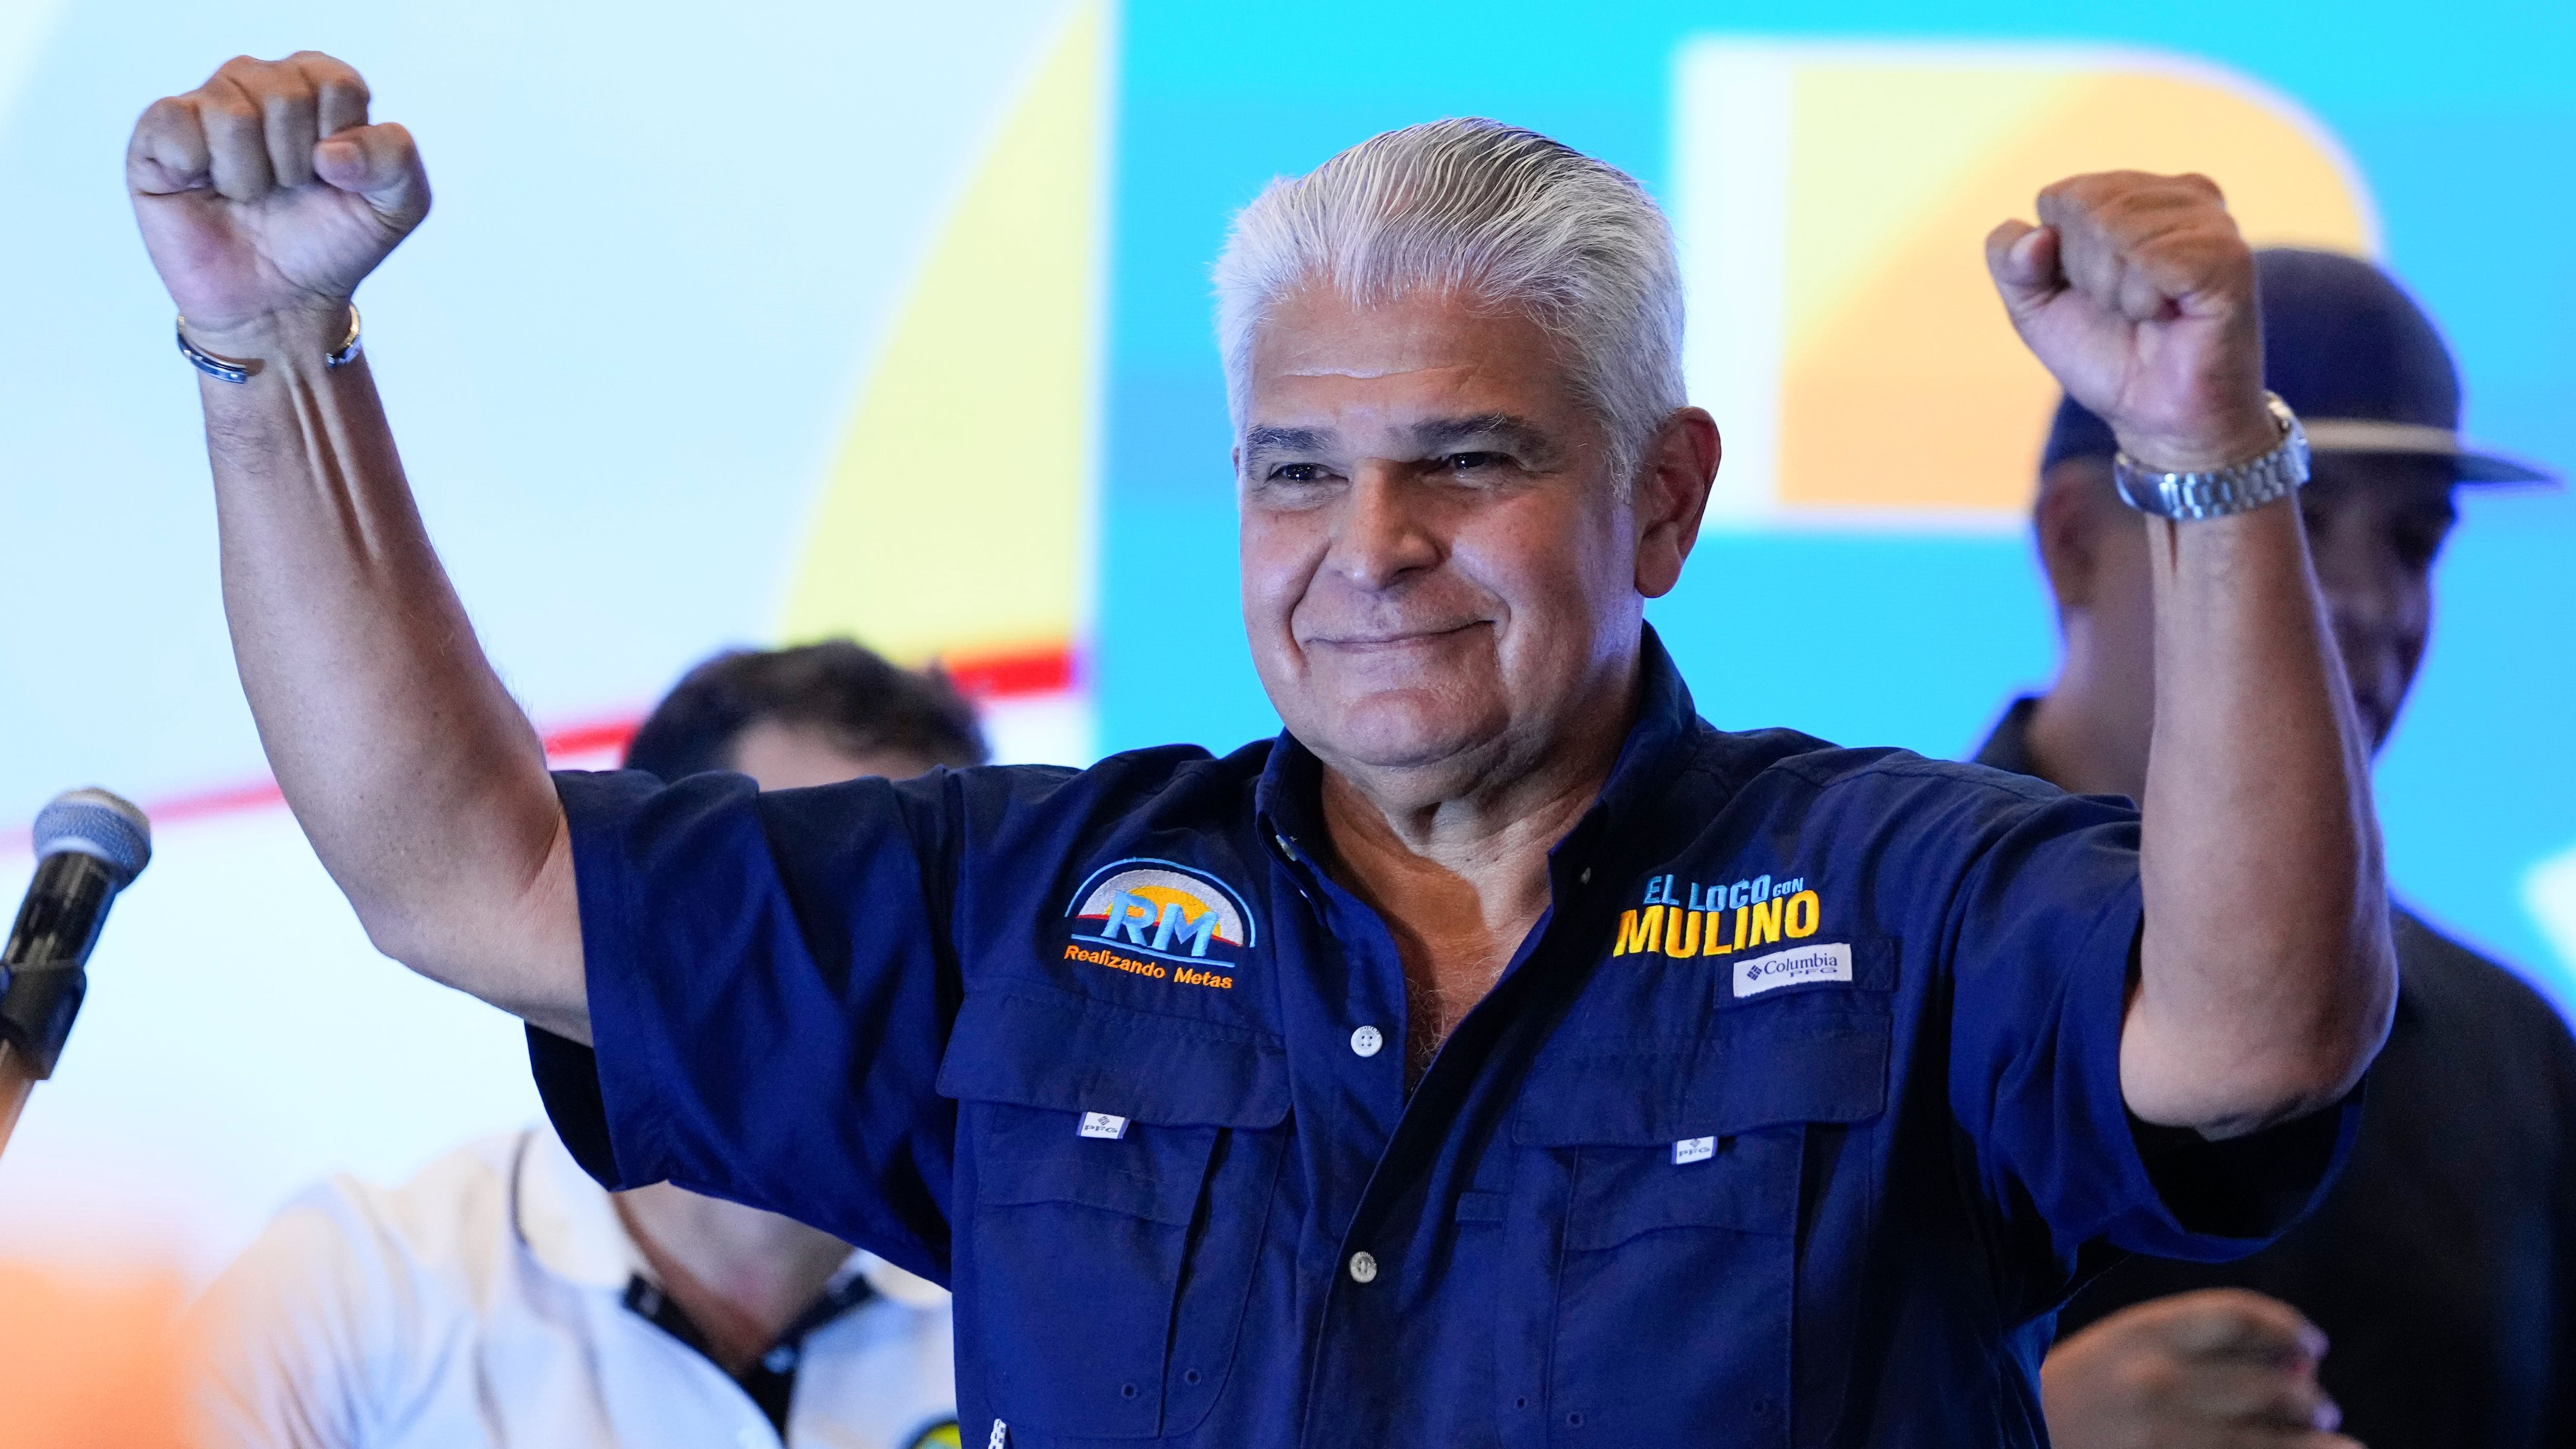 José Raúl Mulino gana las elecciones en Panamá impulsado por el expresidente Martinelli, condenado por corrupción